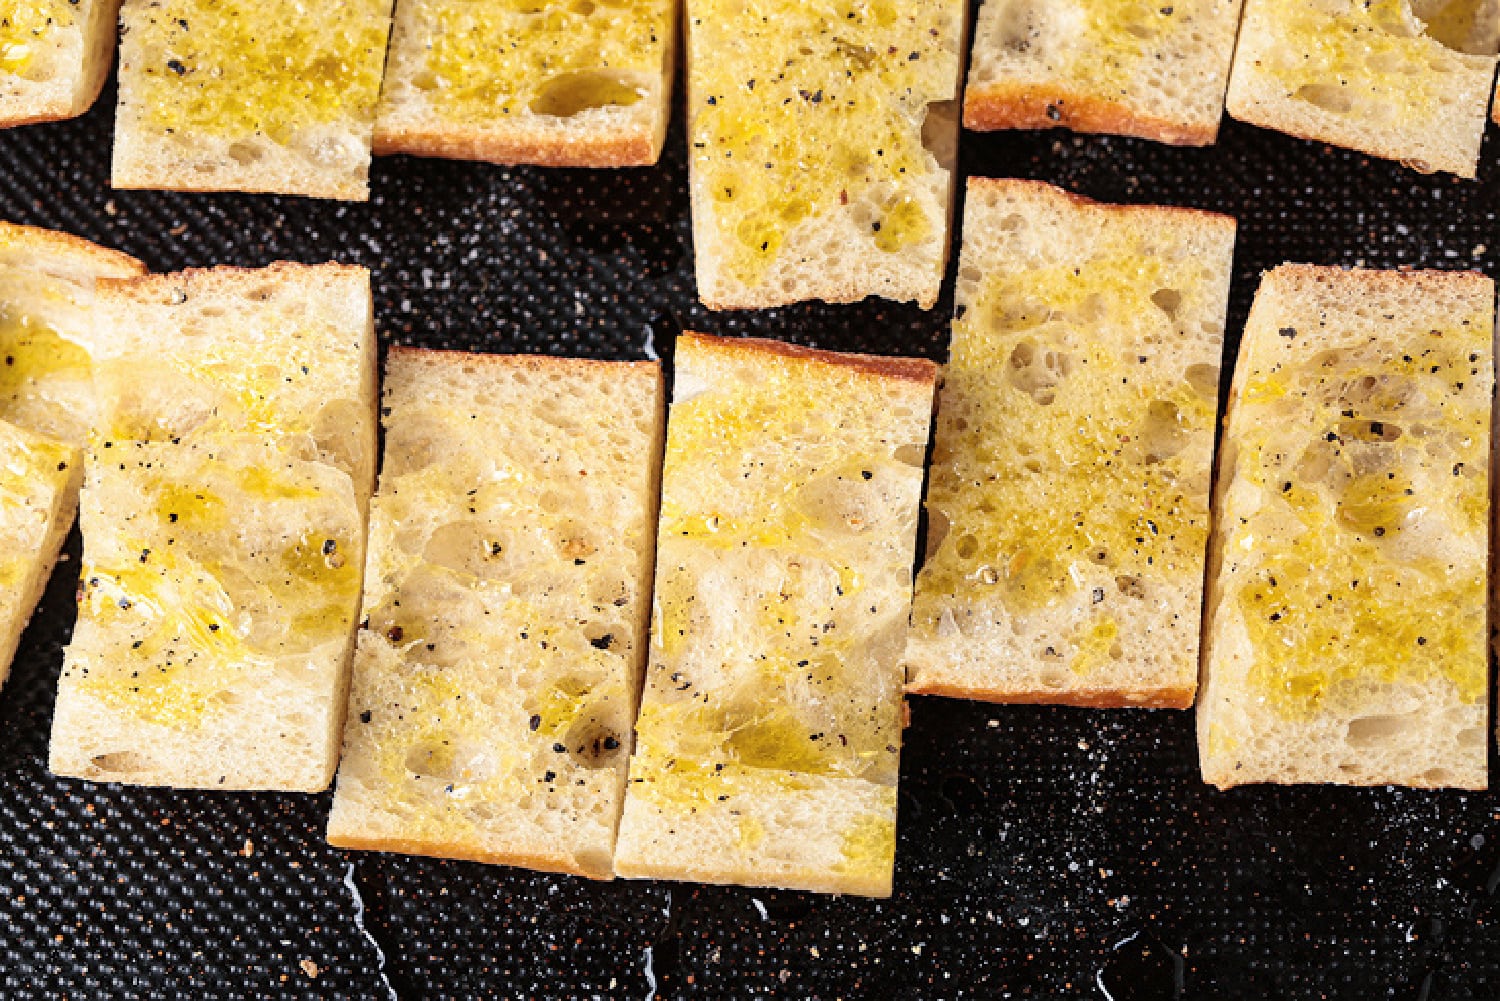 ciabatta bread drizzled with olive oil